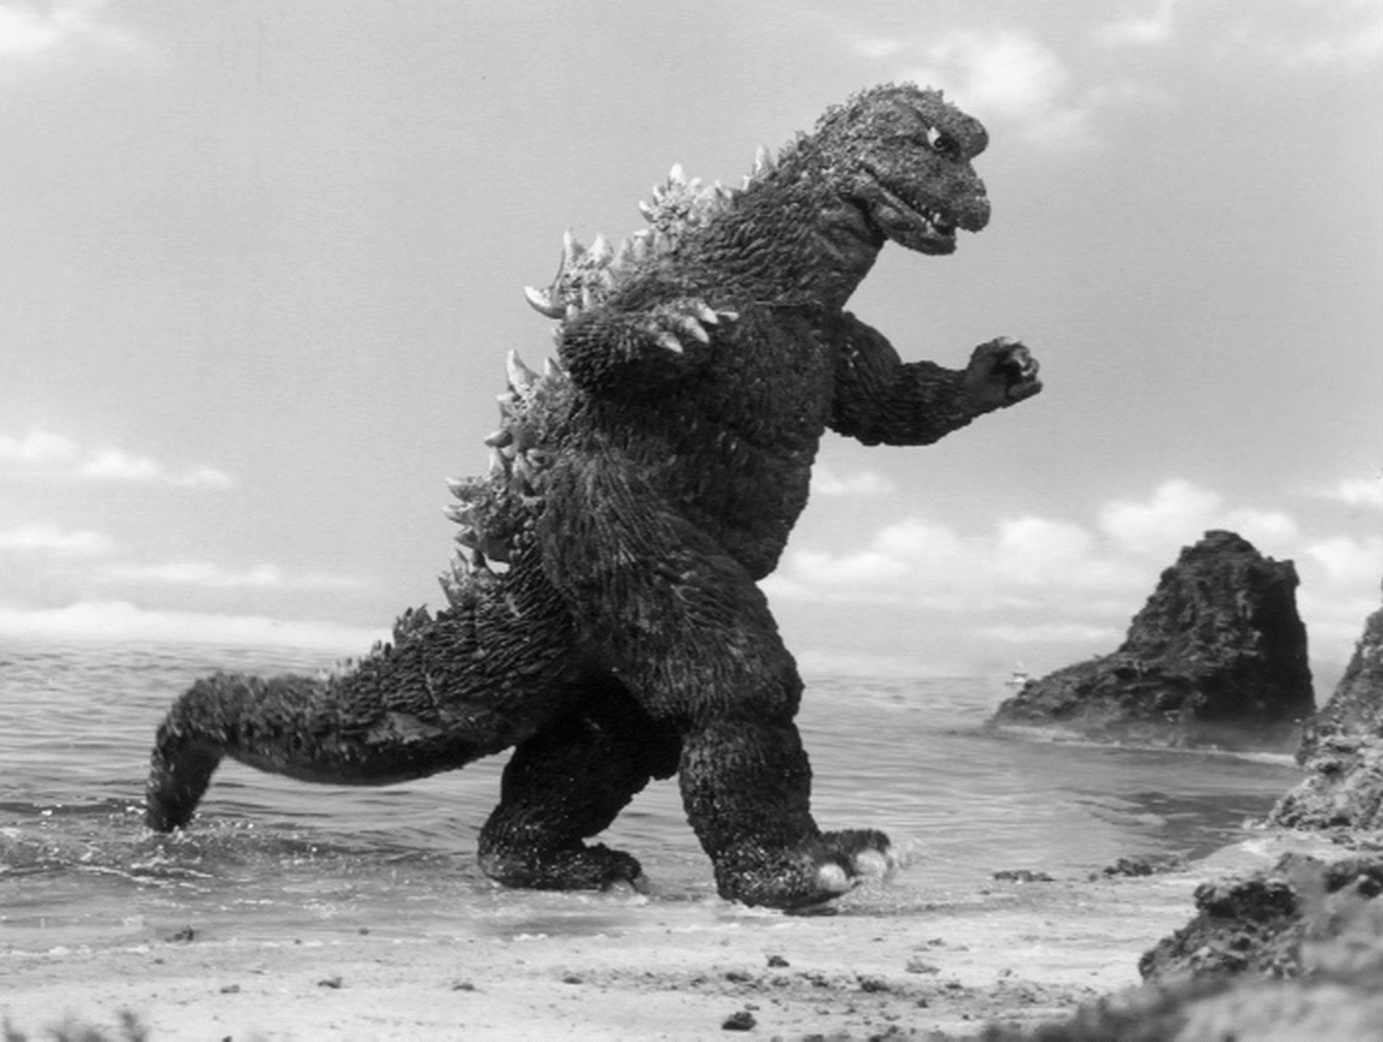 ถัดไป ภาพยนตร์เรื่อง 'Godzilla' ถูกล้อเลียนในวันเกิดของสัตว์ประหลาด